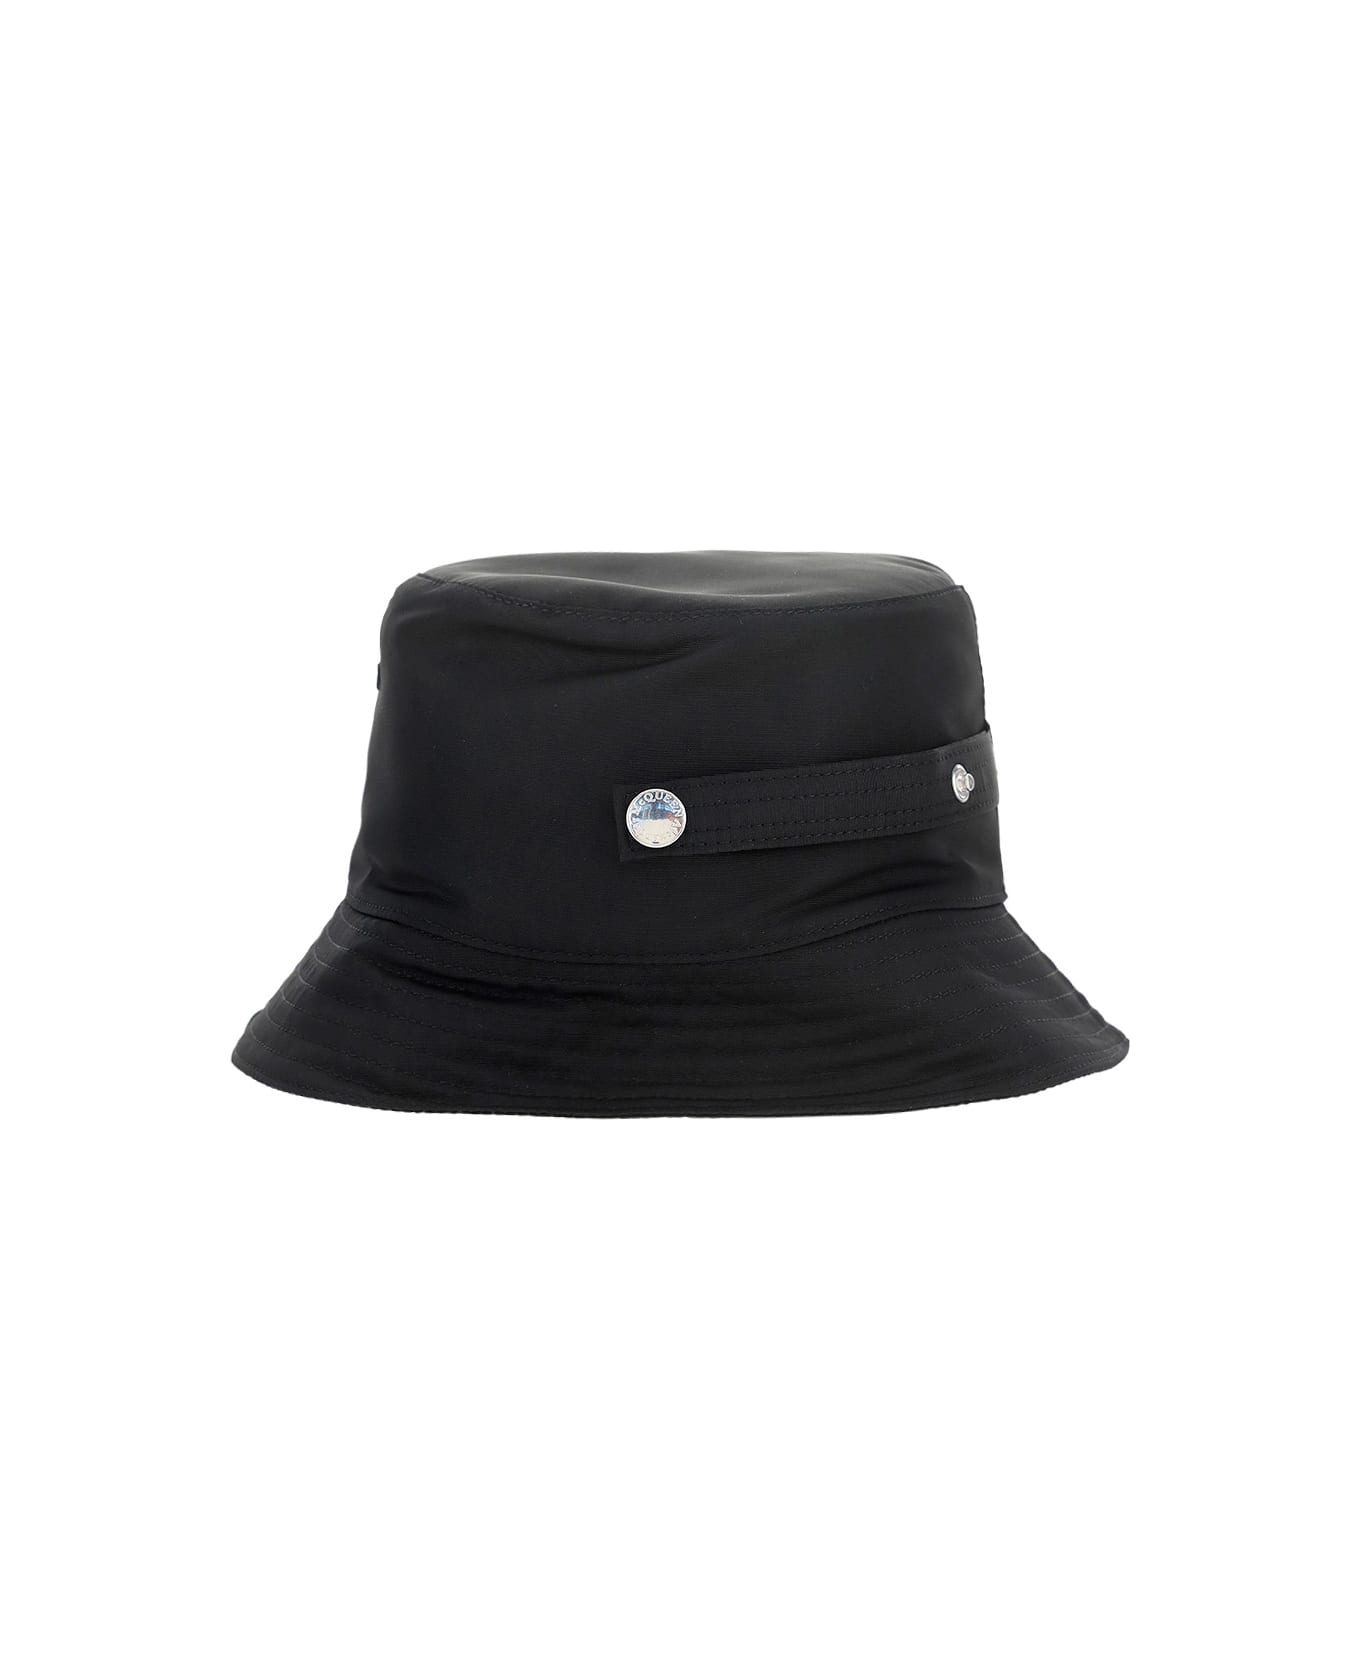 Alexander McQueen Bucket Hat - Black/ivory 帽子